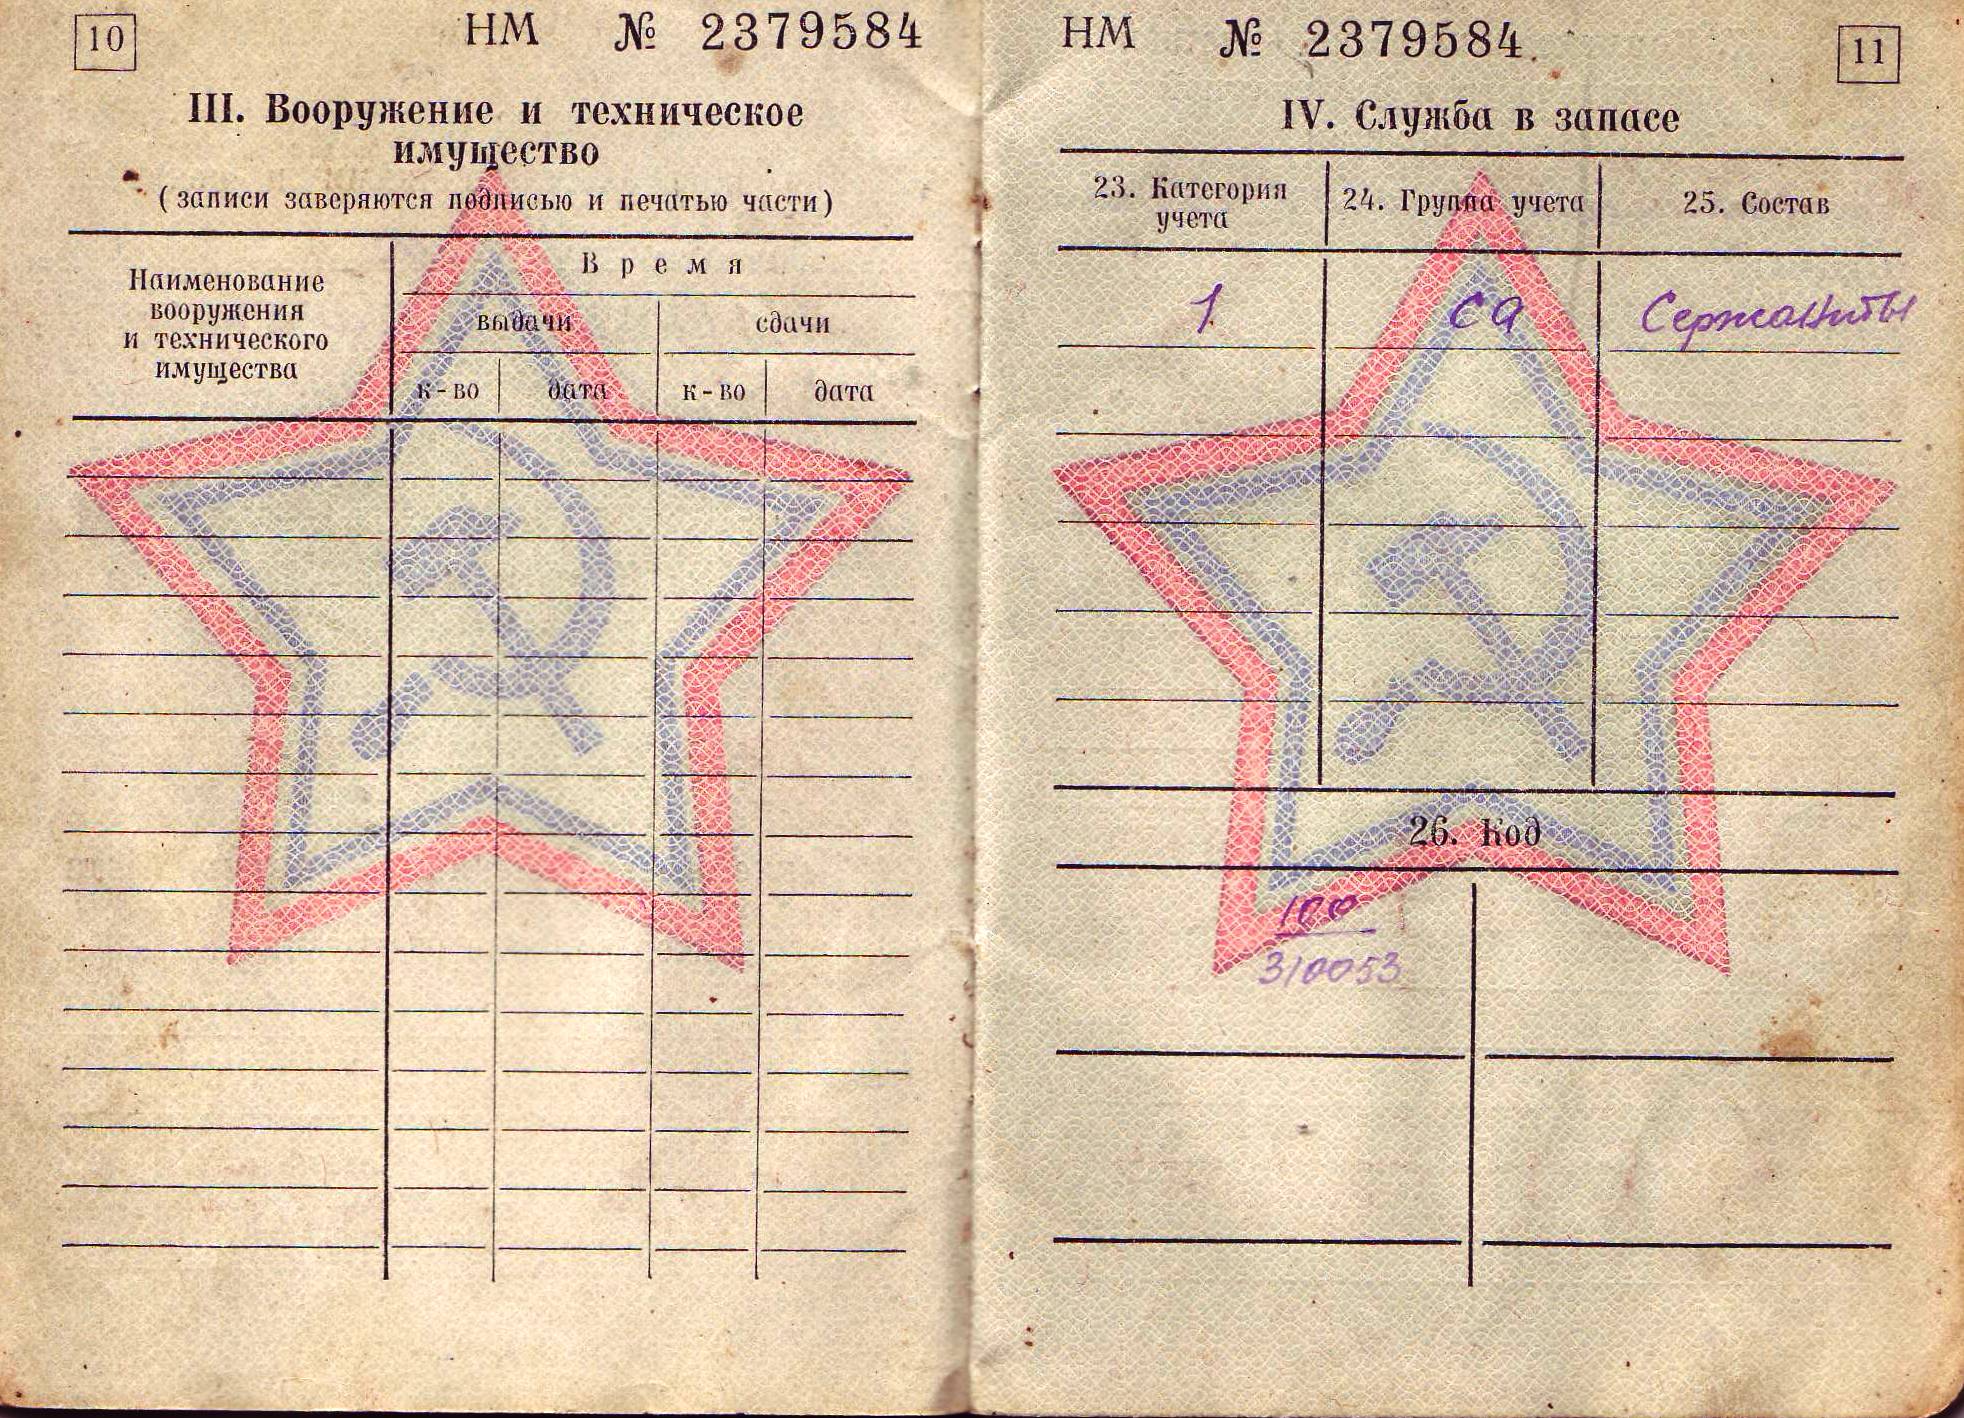 Класс военного билета. Категория запаса в военном билете. Военный билет. Военный билет СССР. Военный билет пограничника.